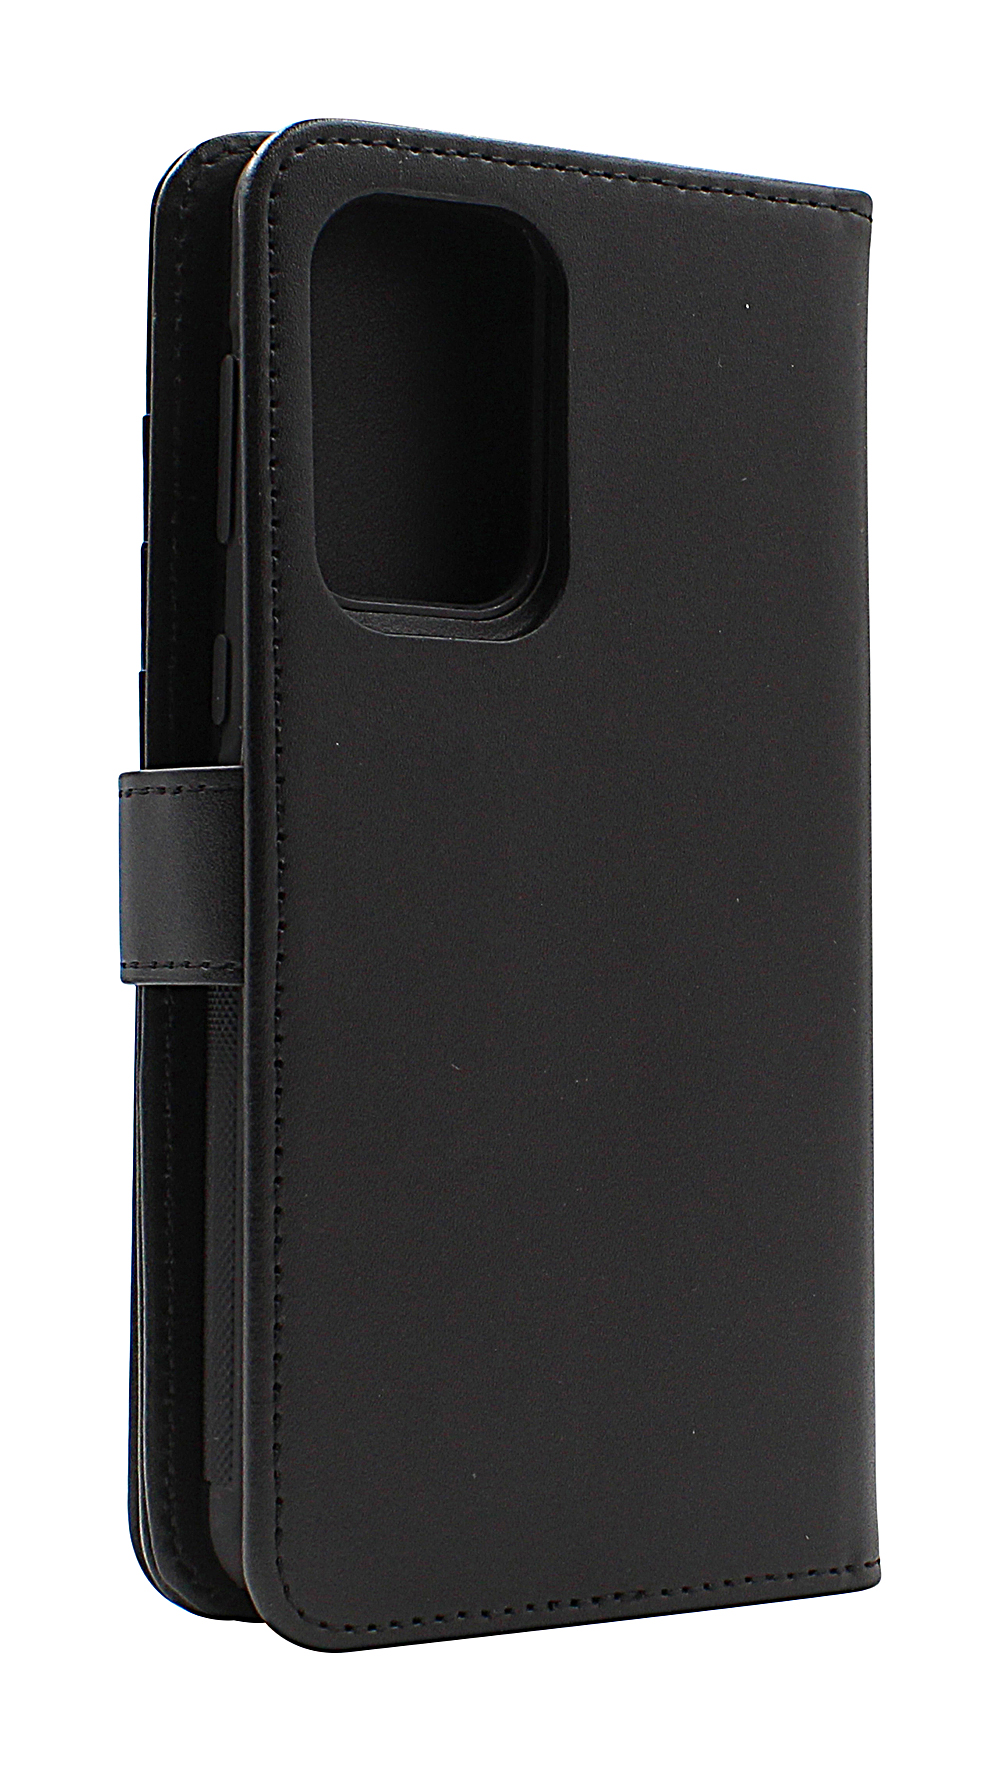 Skimblocker XL Magnet Wallet Samsung Galaxy A33 5G (A336B)